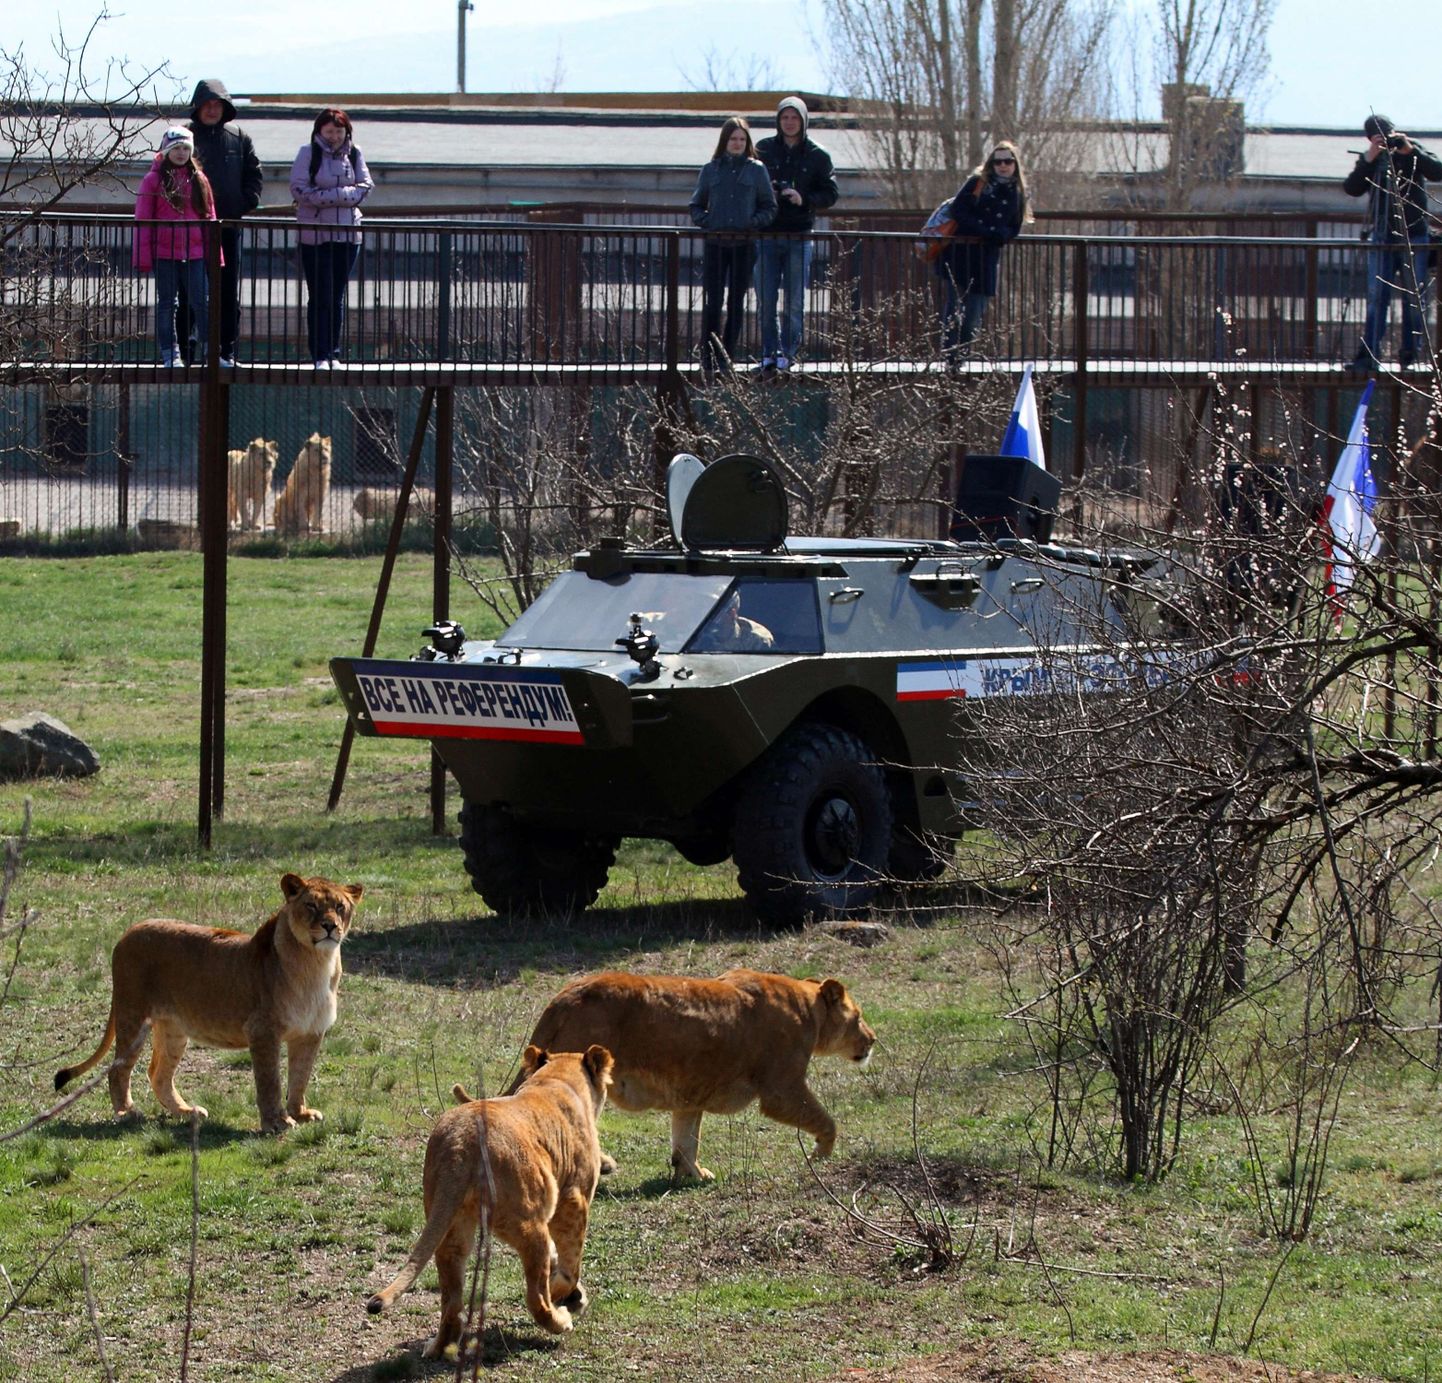 Военную технику с российскими флагами можно увидеть даже в зоопарке Симферополя.